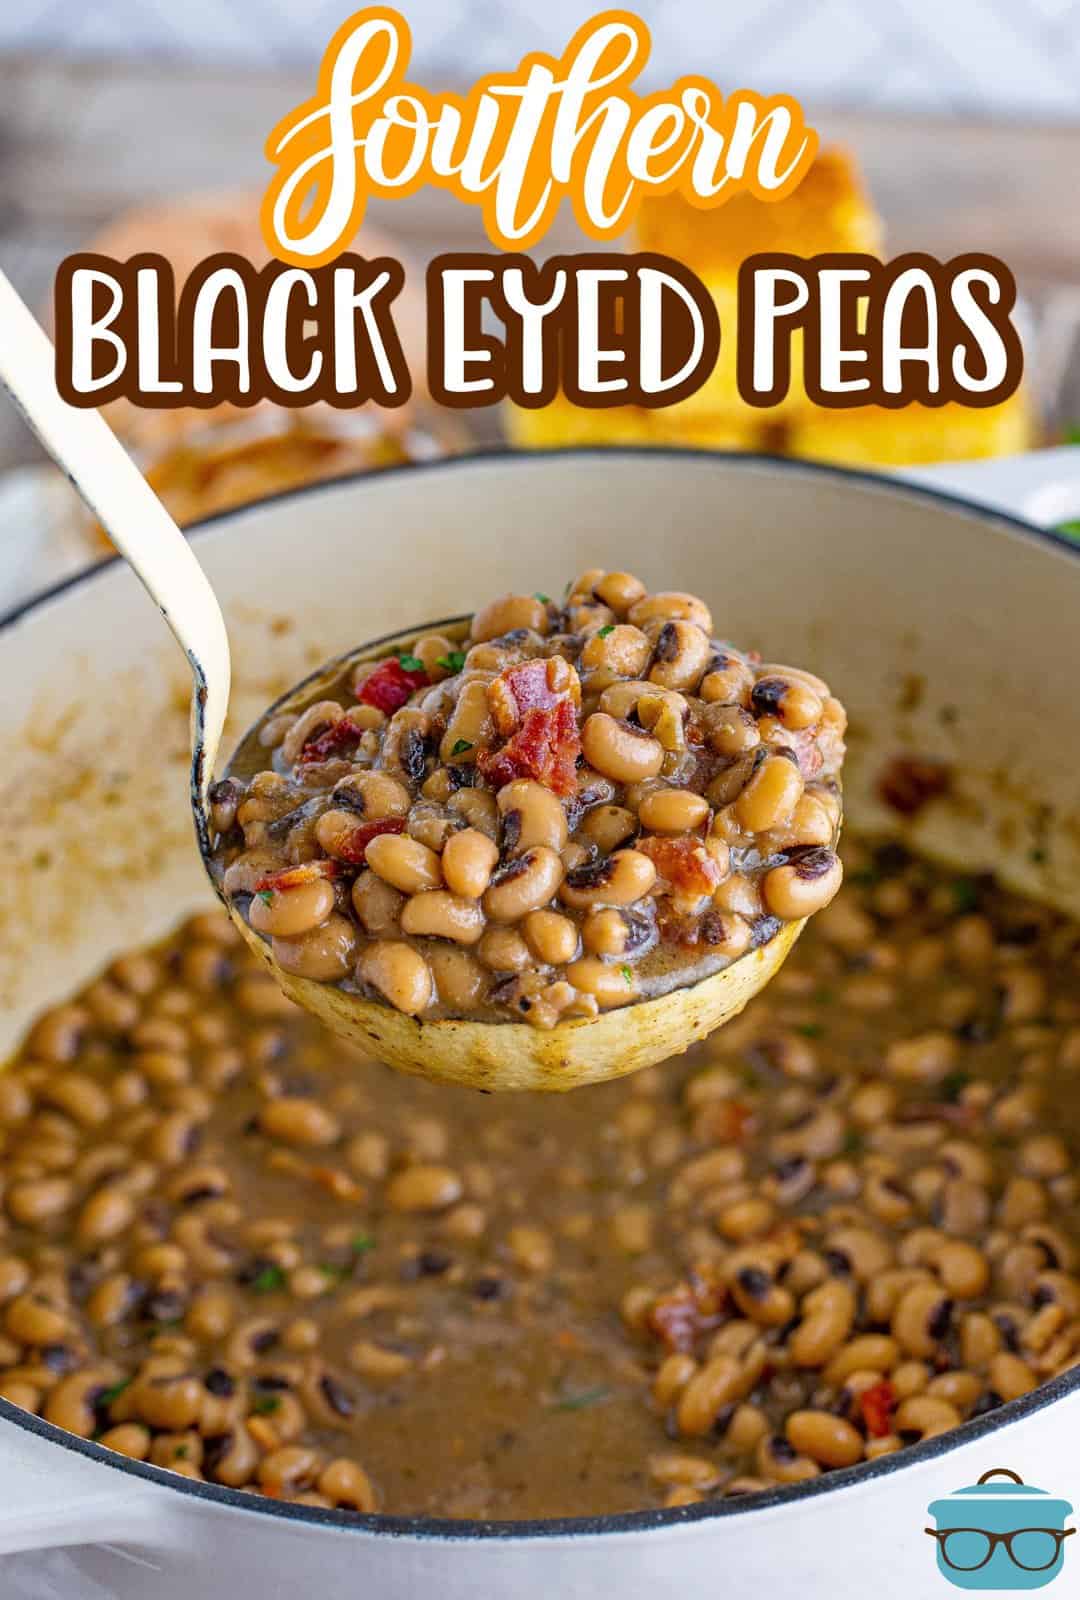 Immagine Pinterest di un mestolo che regge alcuni dei Black Eyed Peas del sud.